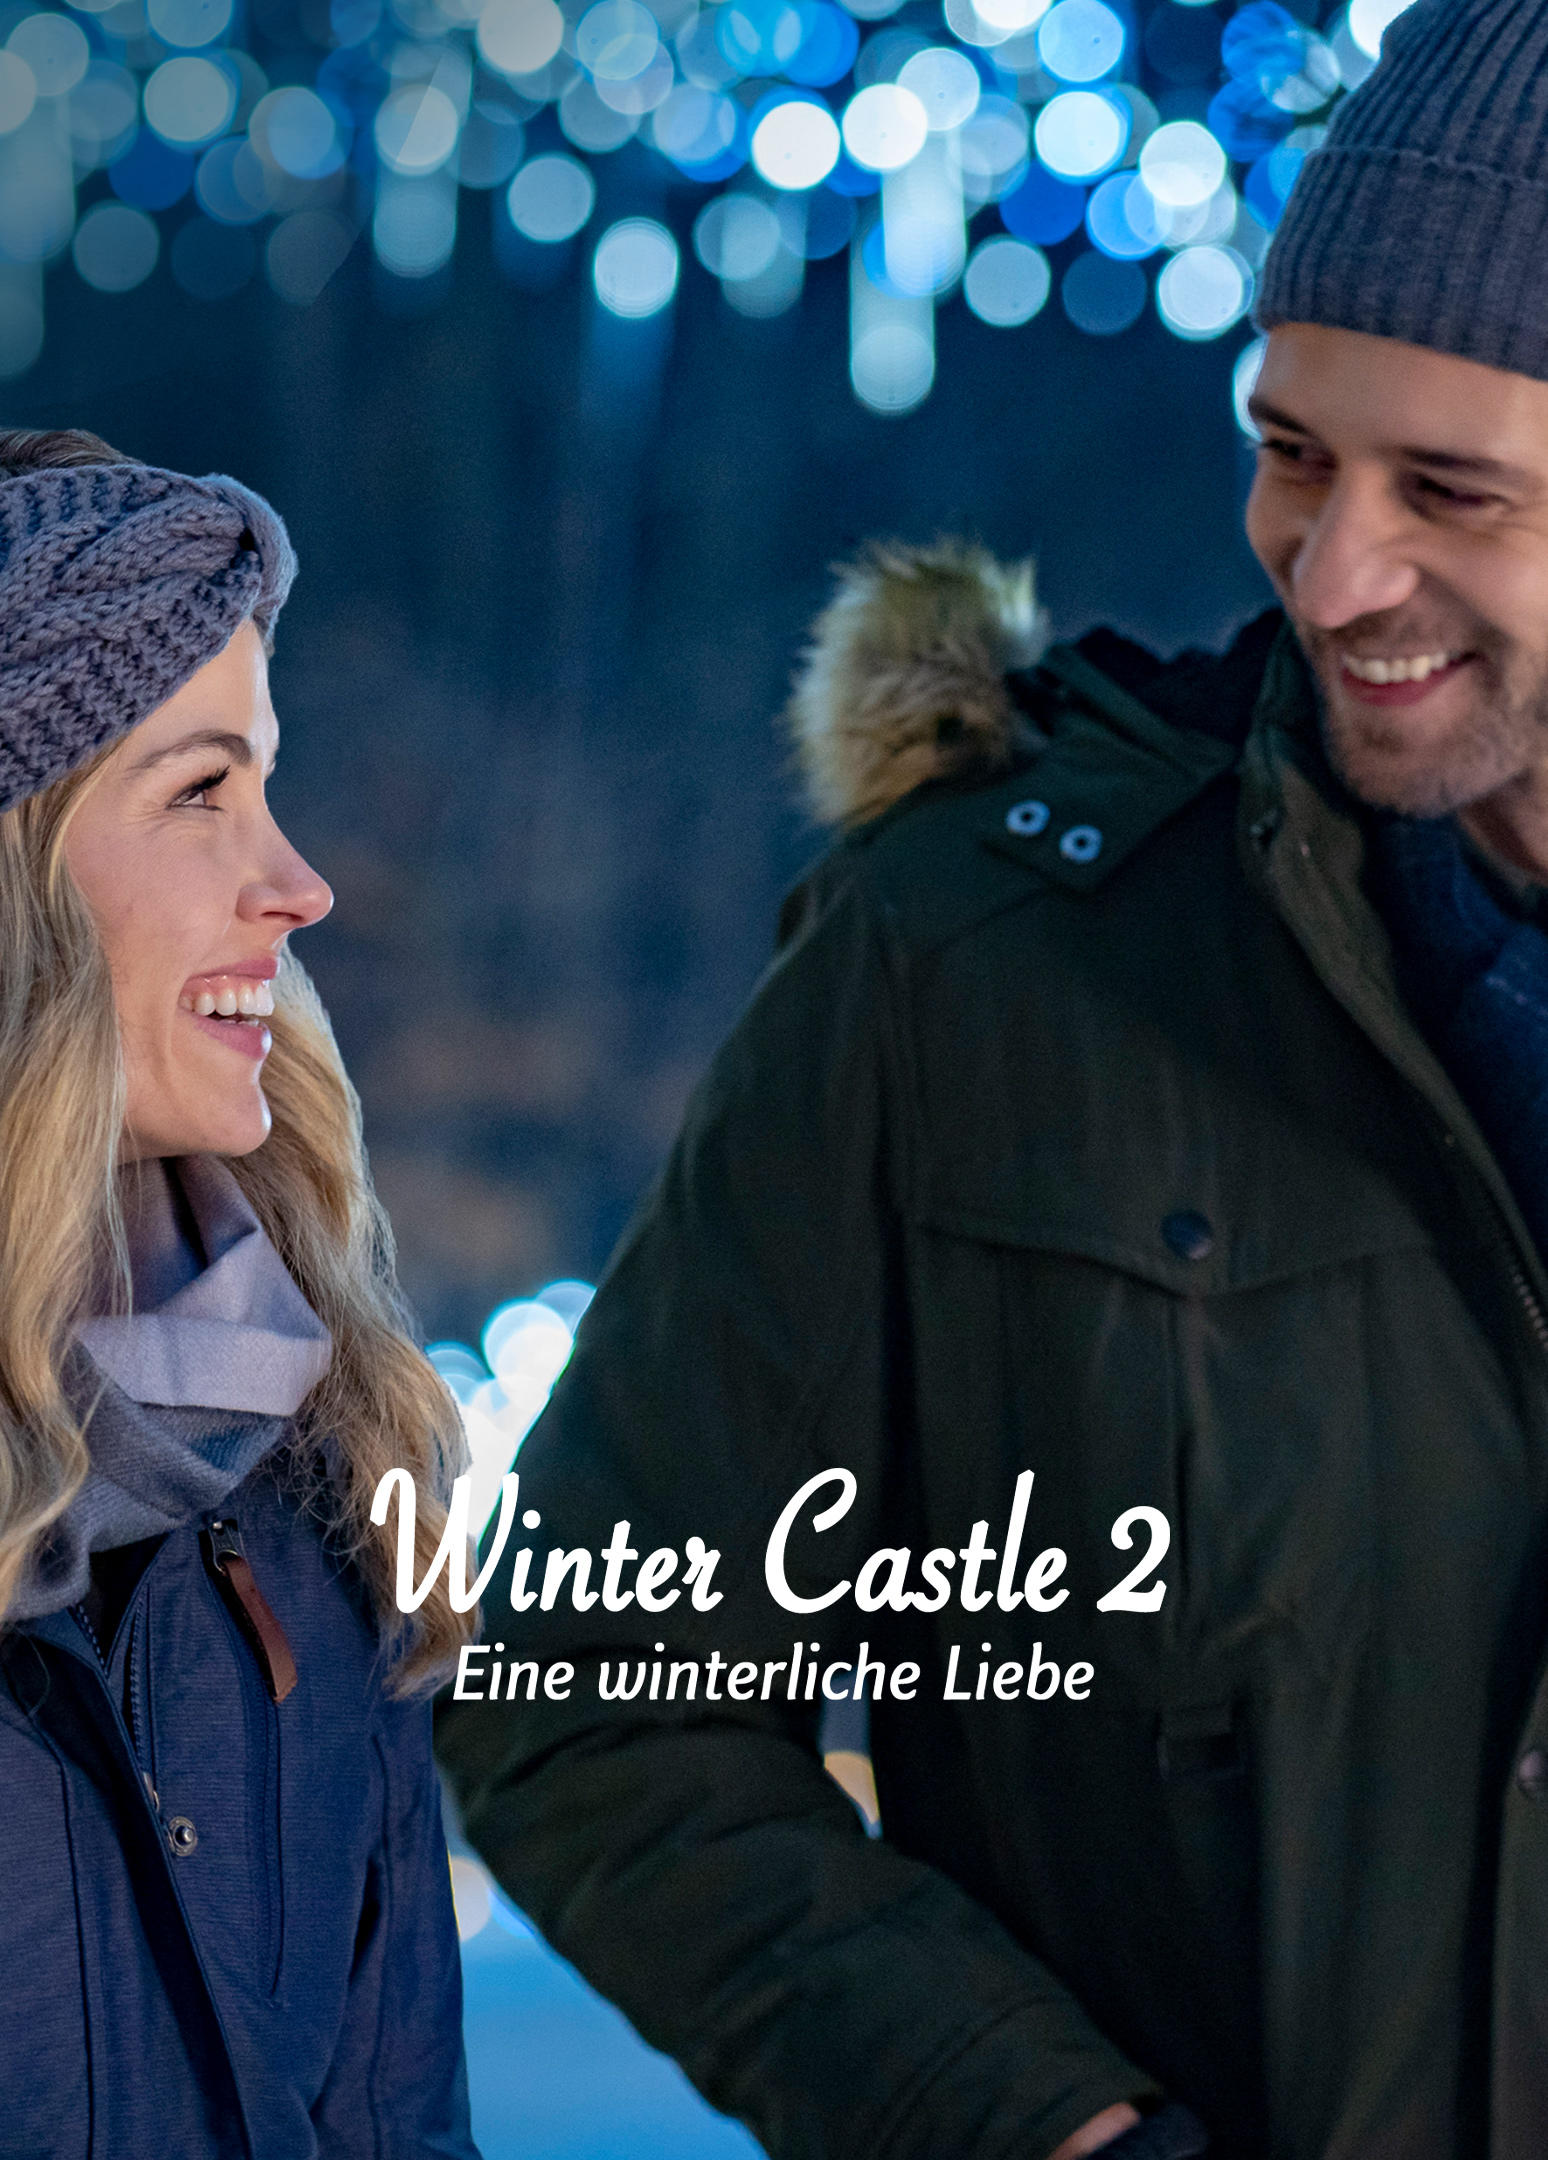 Winter Castle 2 - Eine winterliche Liebe